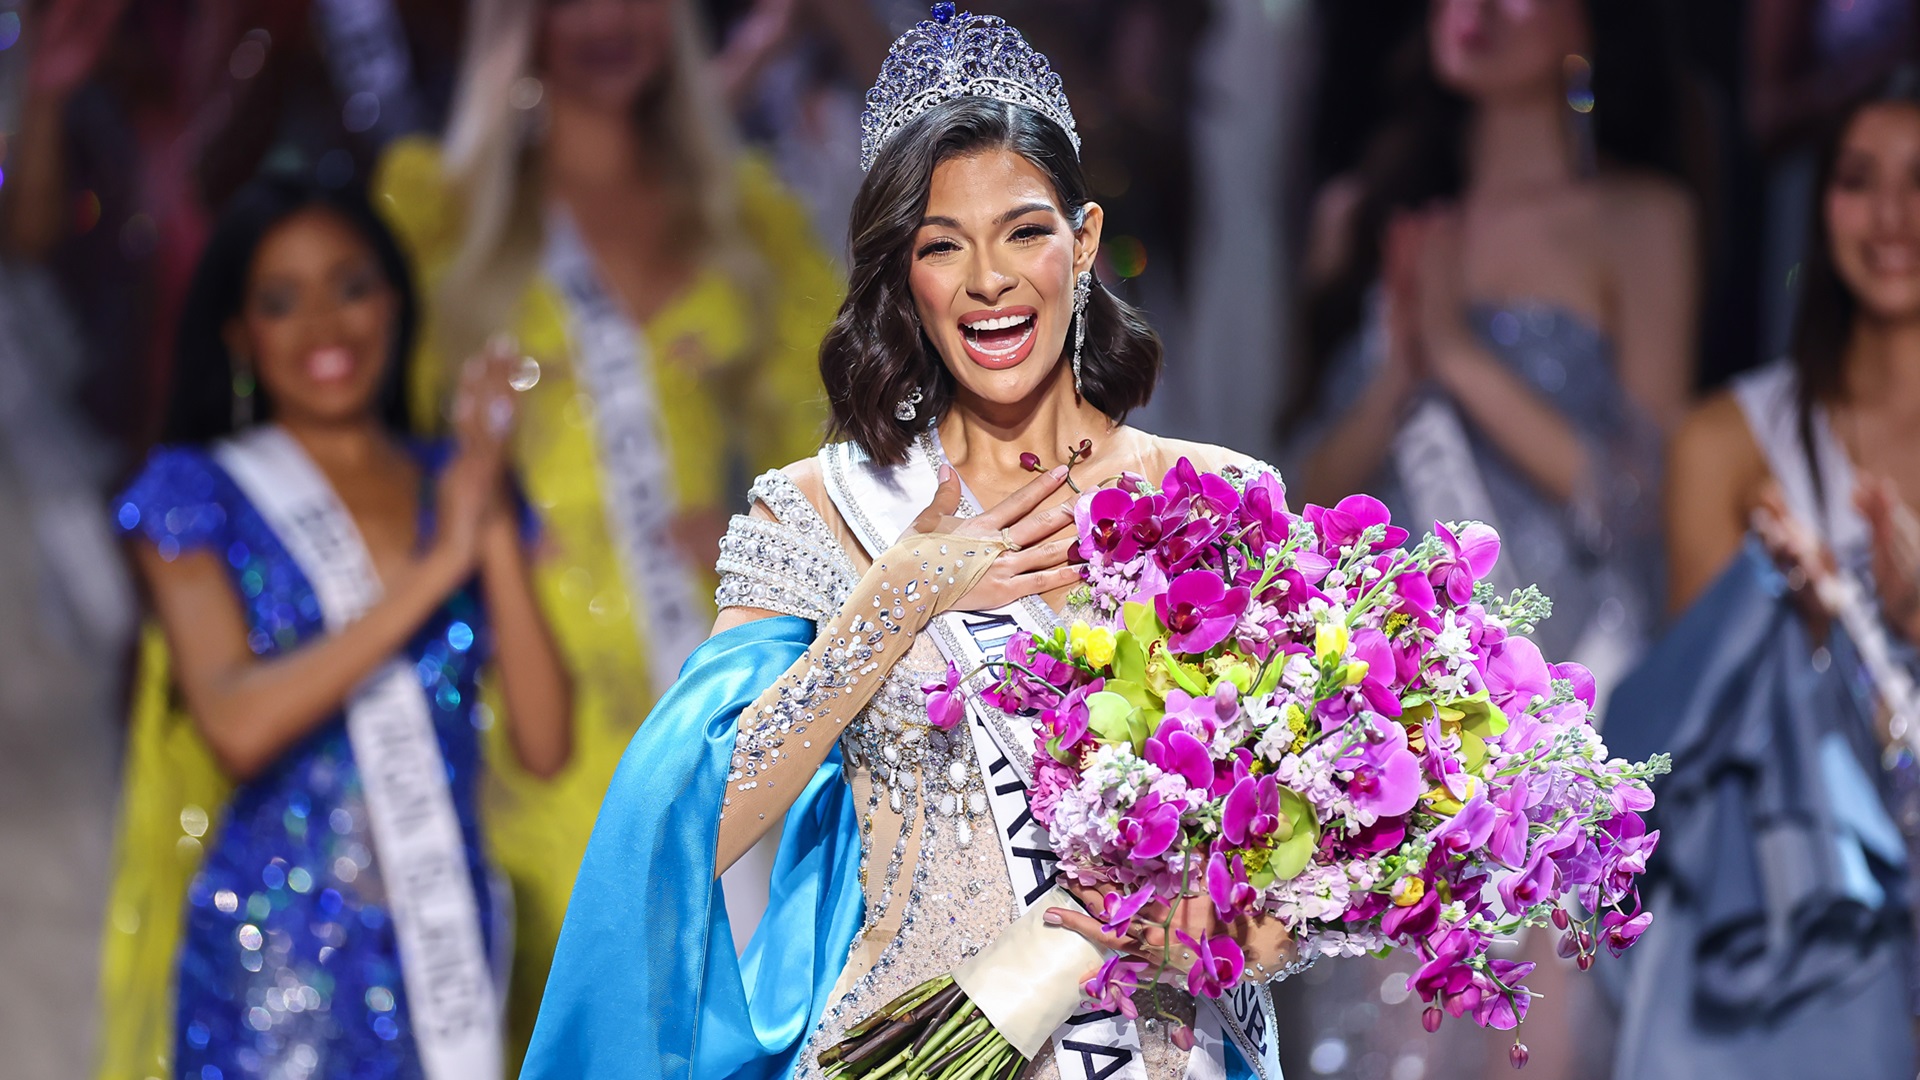 Qui est Sheynnis Palacios, la grande gagnante de Miss Univers 2023 ?